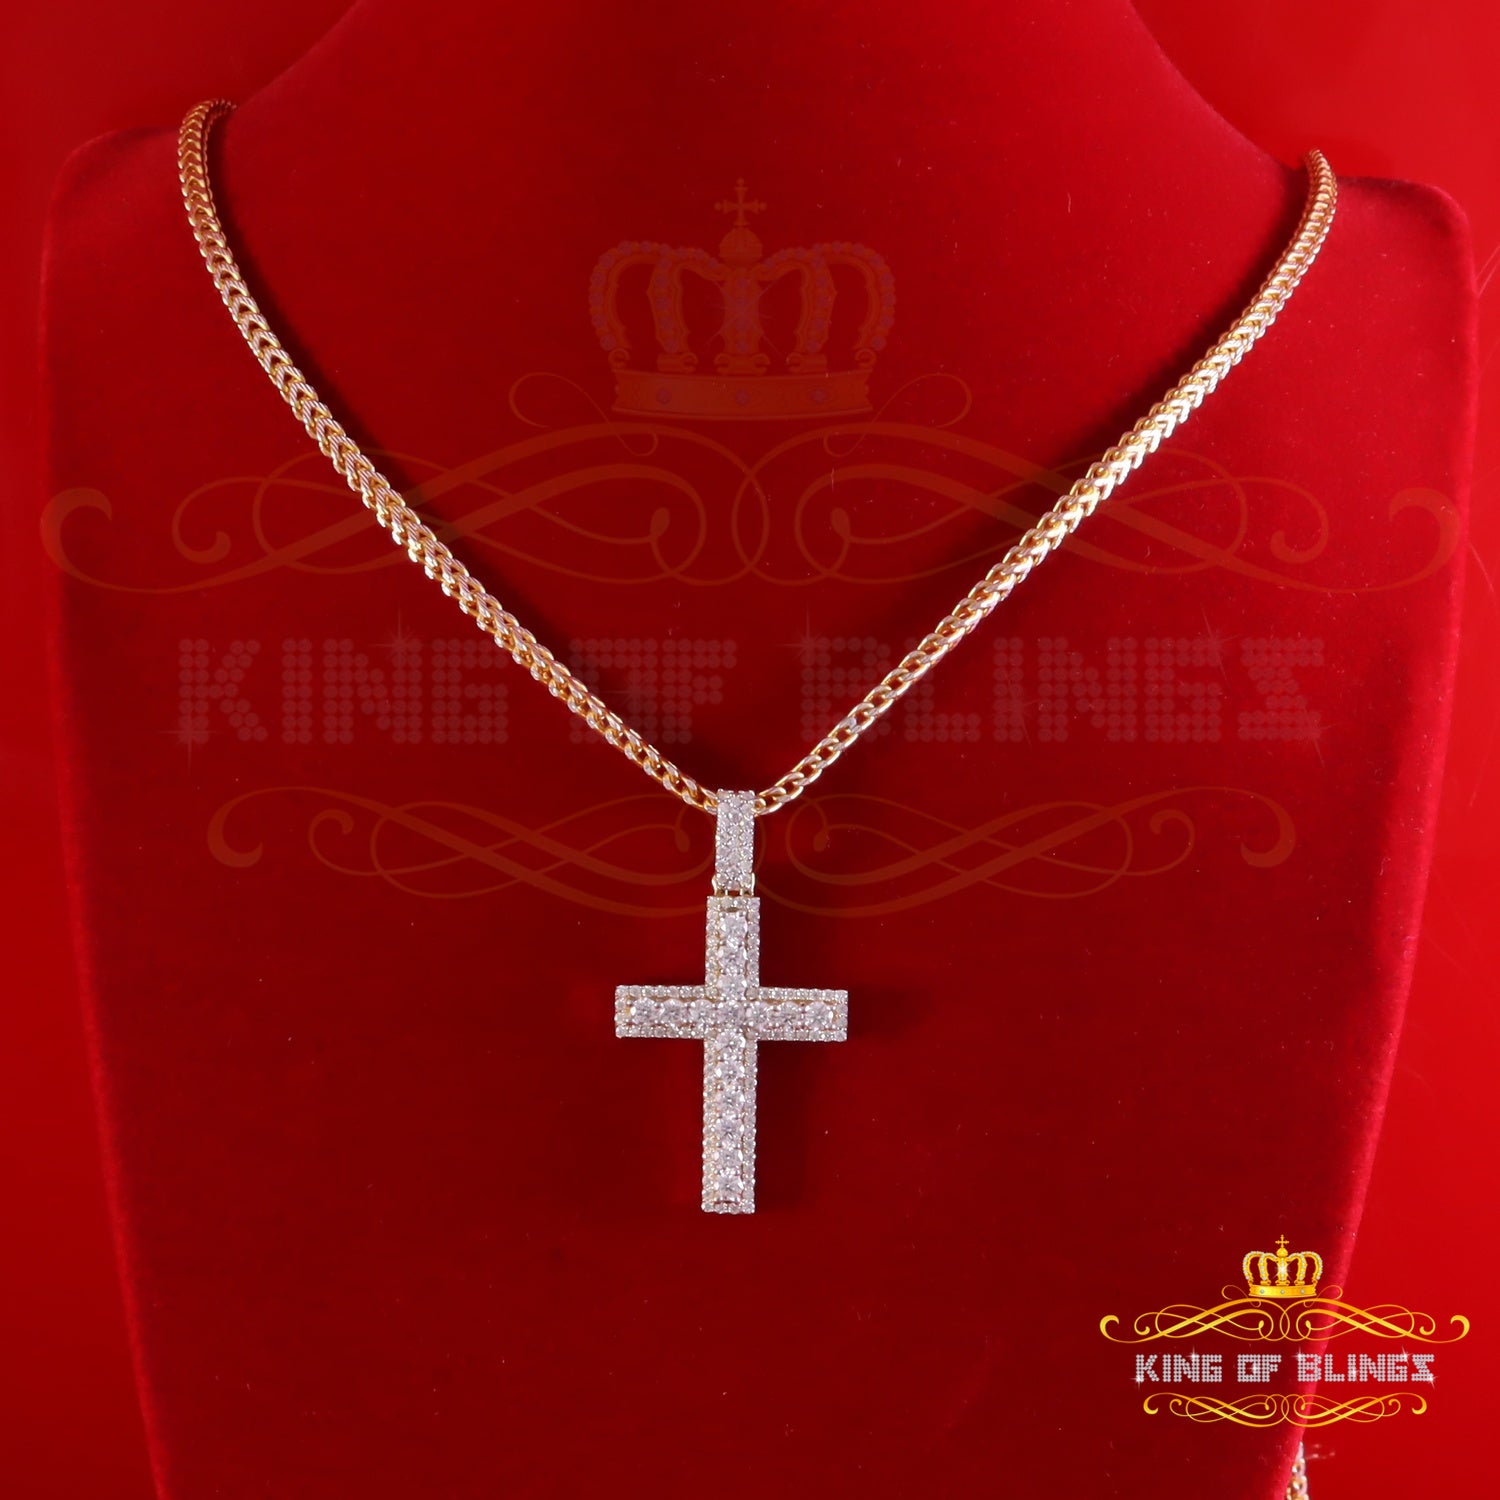 King Of Bling's Men's New Charm Cross Pendant 925 Yellow Silver Moissanite 2.50ct VVS D Clr KING OF BLINGS